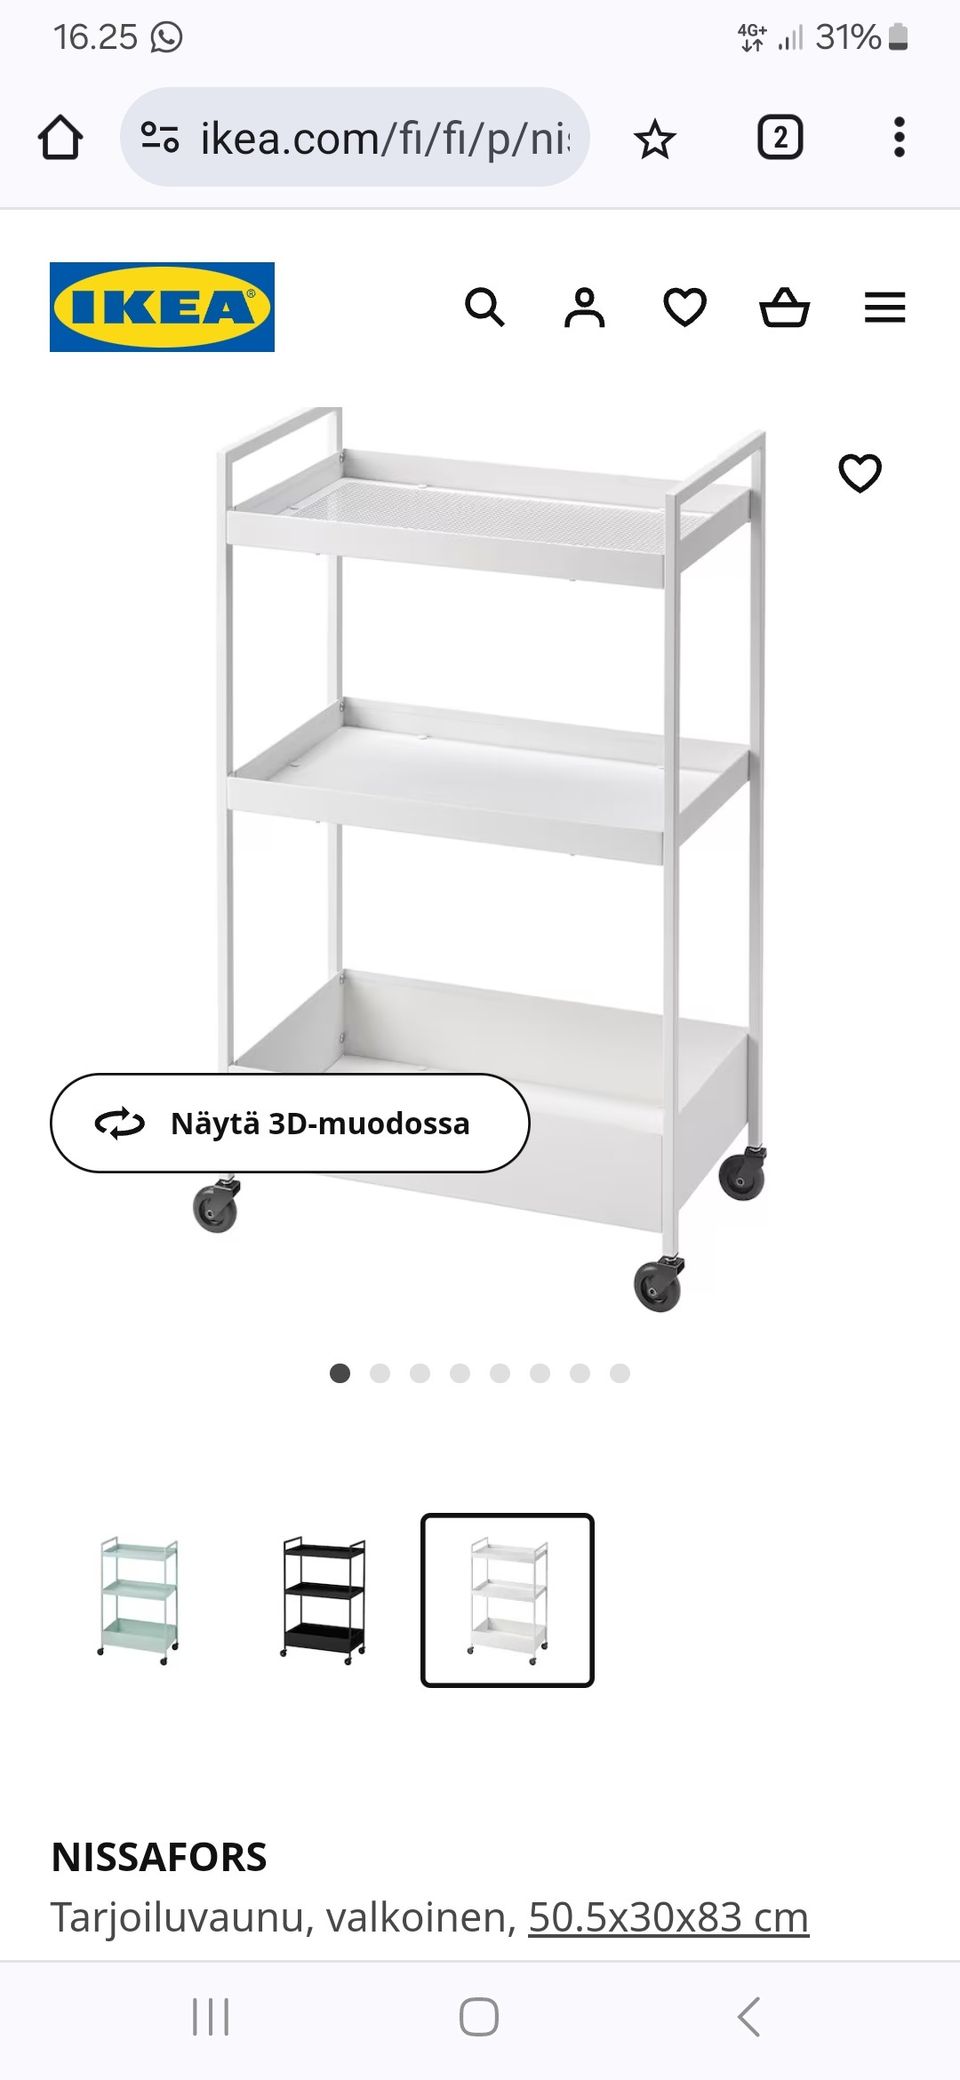 Ikea Nissafors tarjoiluvaunu